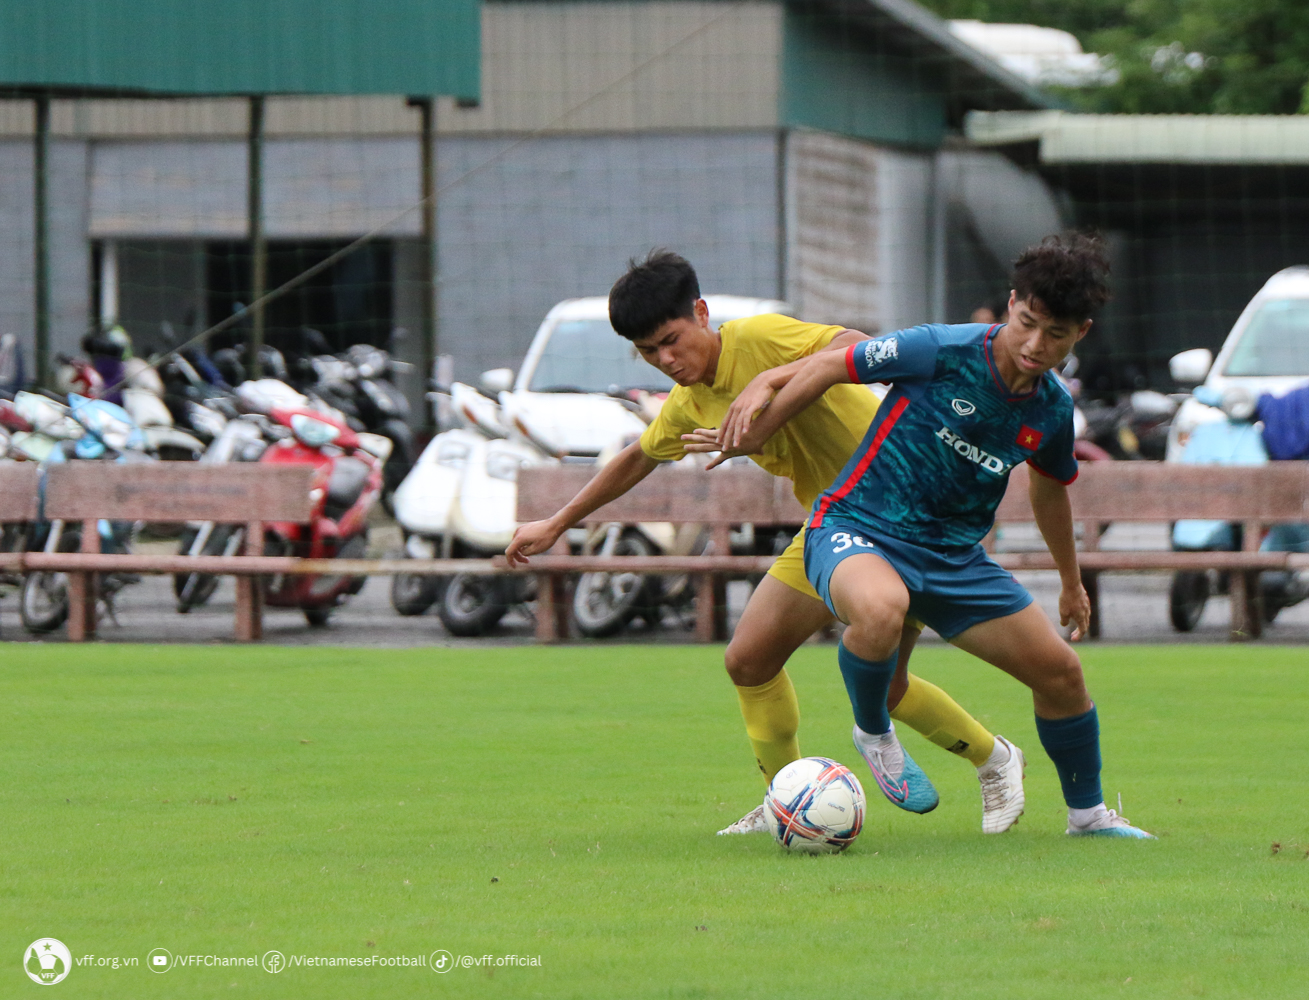 Sau một tuần chỉ tập luyện với các bài phối hợp trên phạm vi hẹp do thiếu quân số, trận đấu tập với U21 Hà Nội là lần đầu tiên các cầu thủ phải căng sức để vận động hết công suất trên toàn mặt sân.